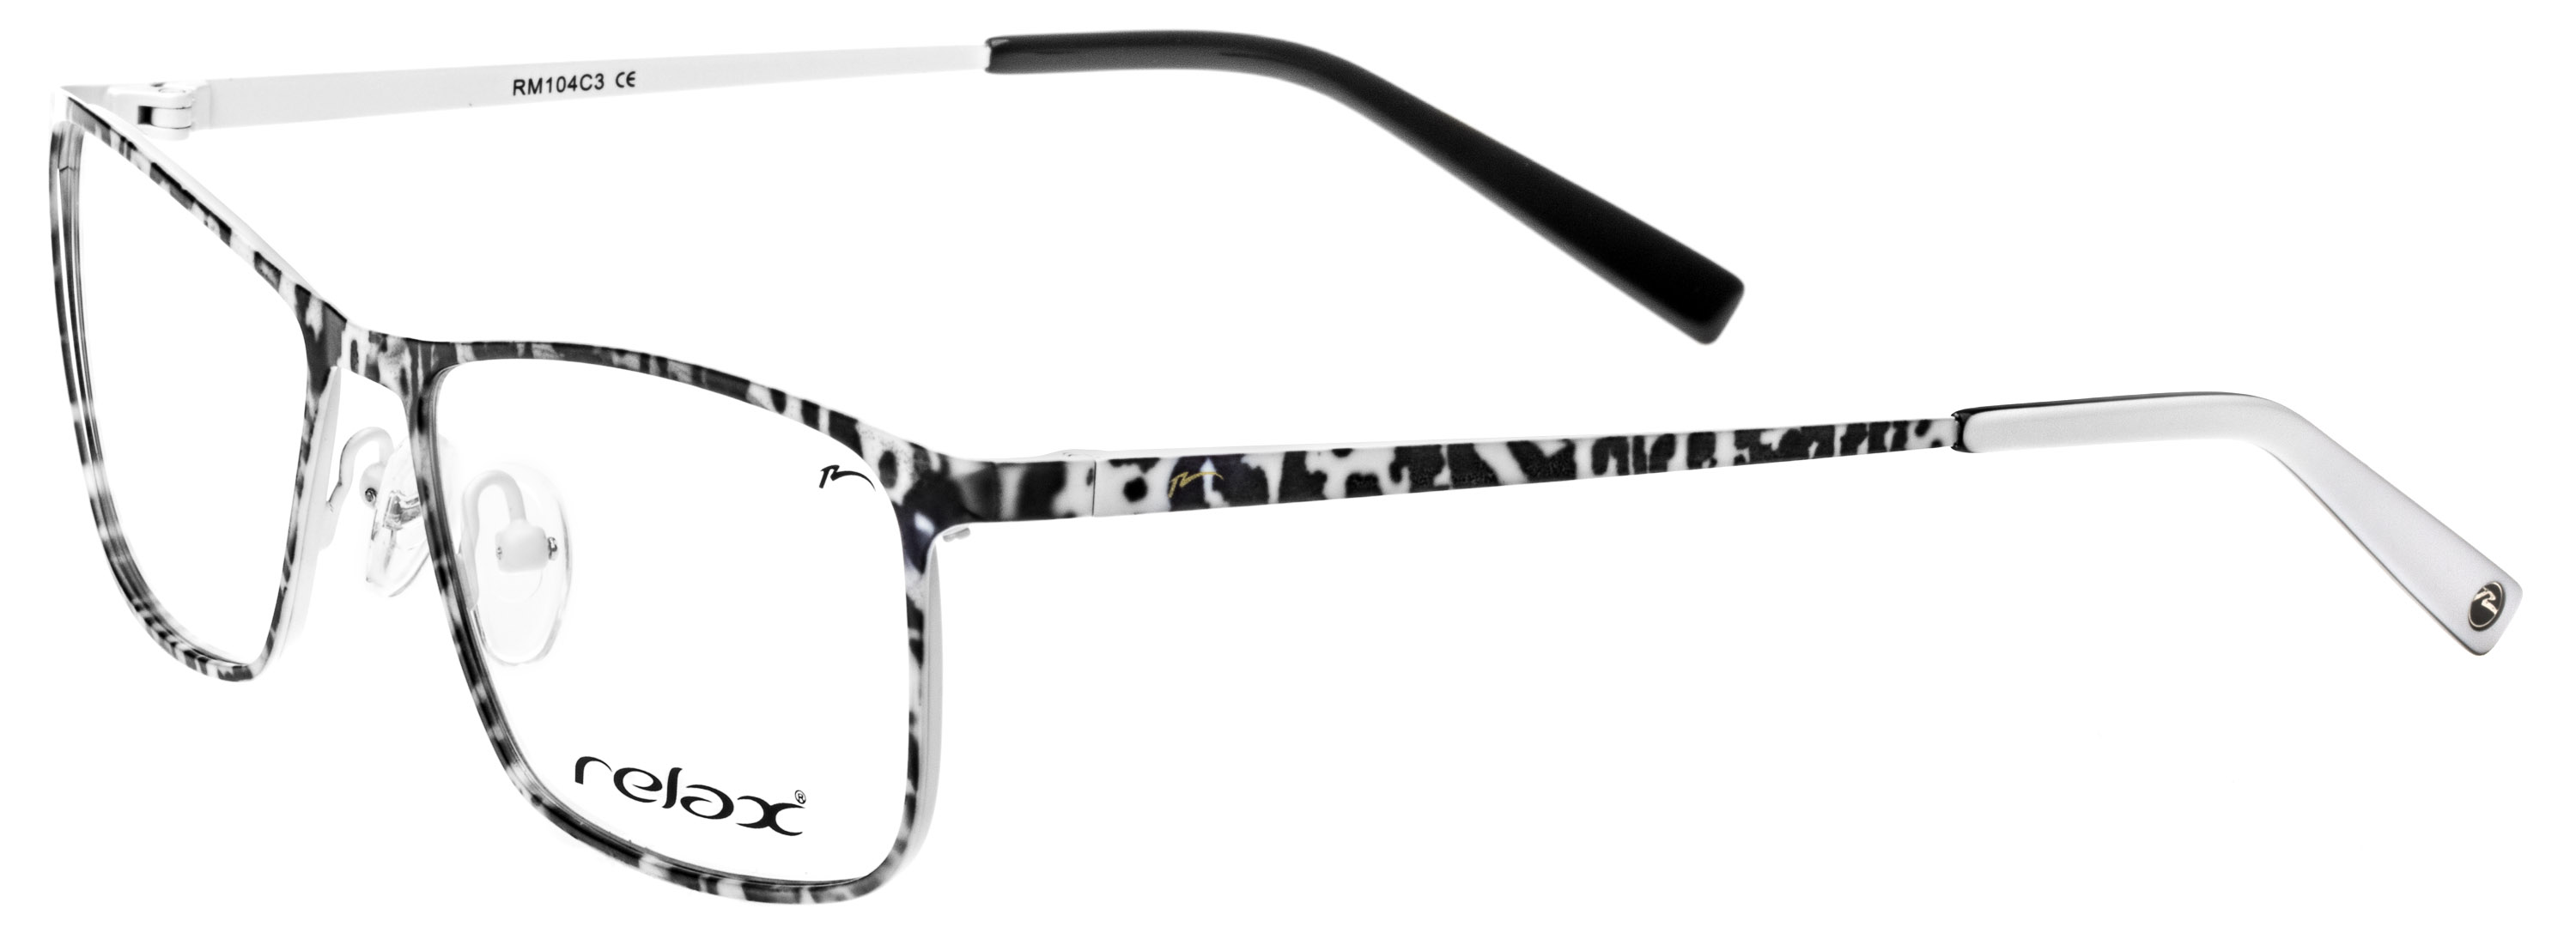 Dioptrické brýle Relax Mili RM104C3 -